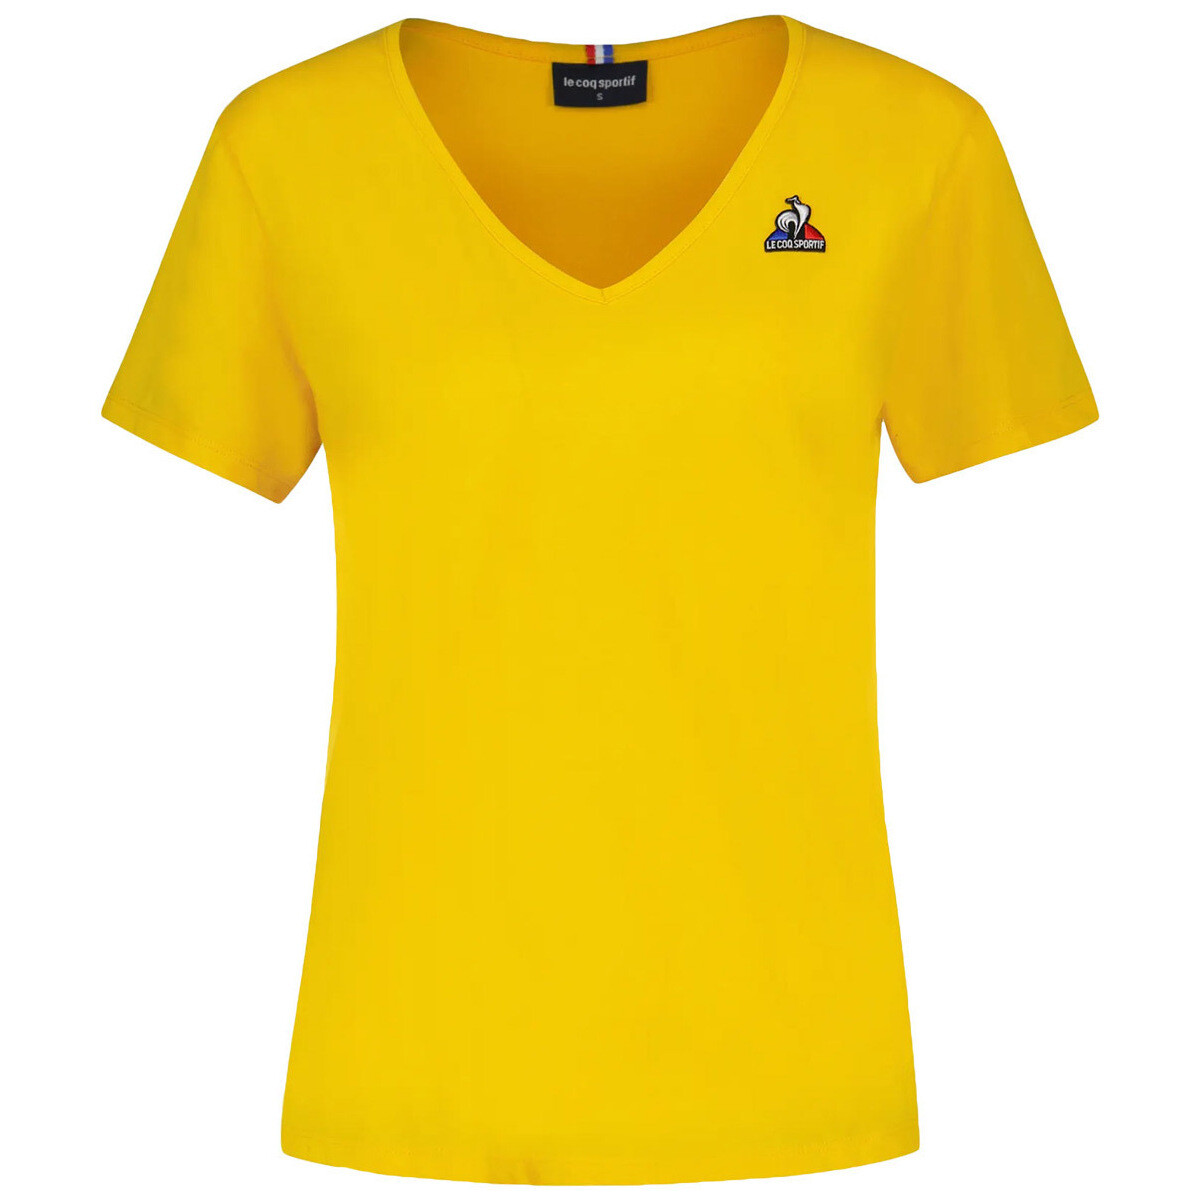 Textil Ženy Trička s krátkým rukávem Le Coq Sportif Essentiels Tee Col V Žlutá